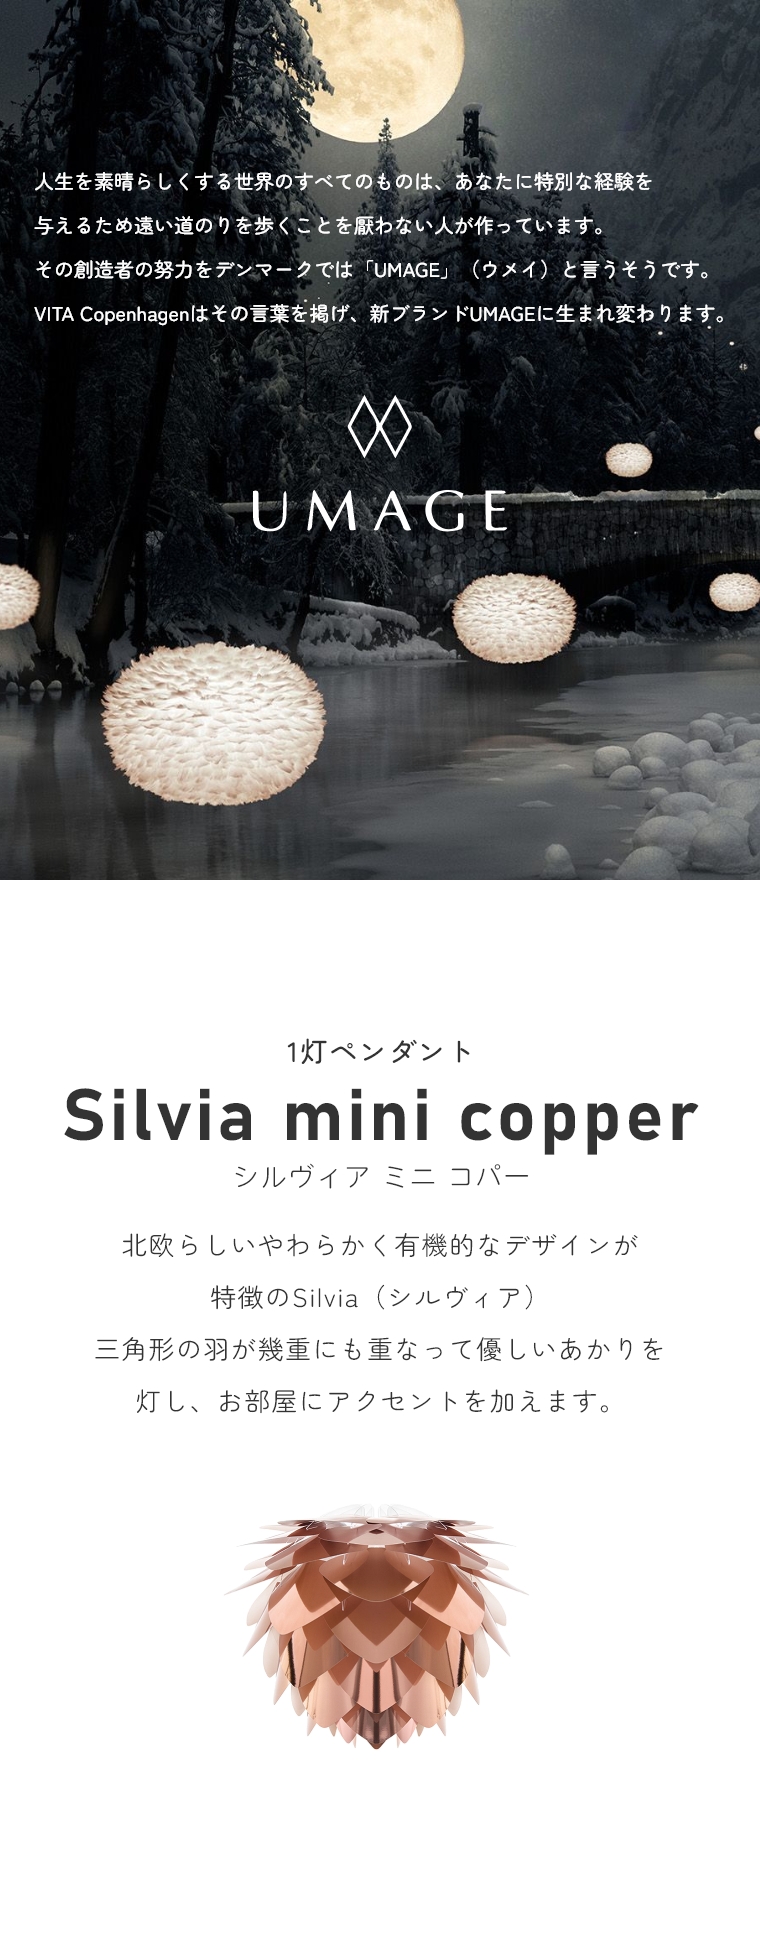 keCXg̃VvȃCg UMAGE(EC) Silvia mini copper (VBA ~j Rp[) V[OCg 2030 GbNX